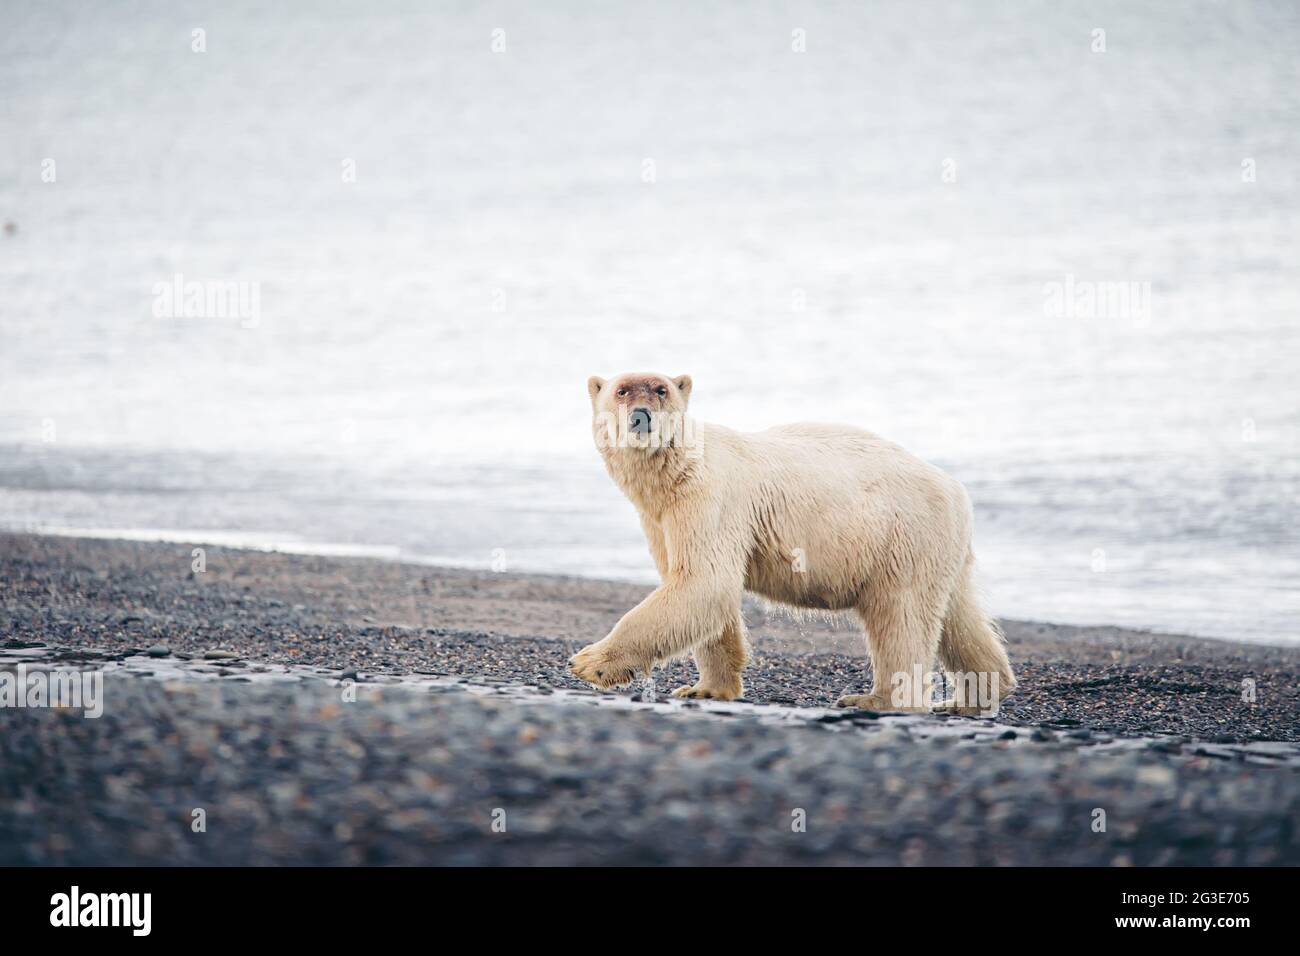 Image De Plage Avec Un Ours Polaire L'ours polaire sur la plage Photo Stock - Alamy